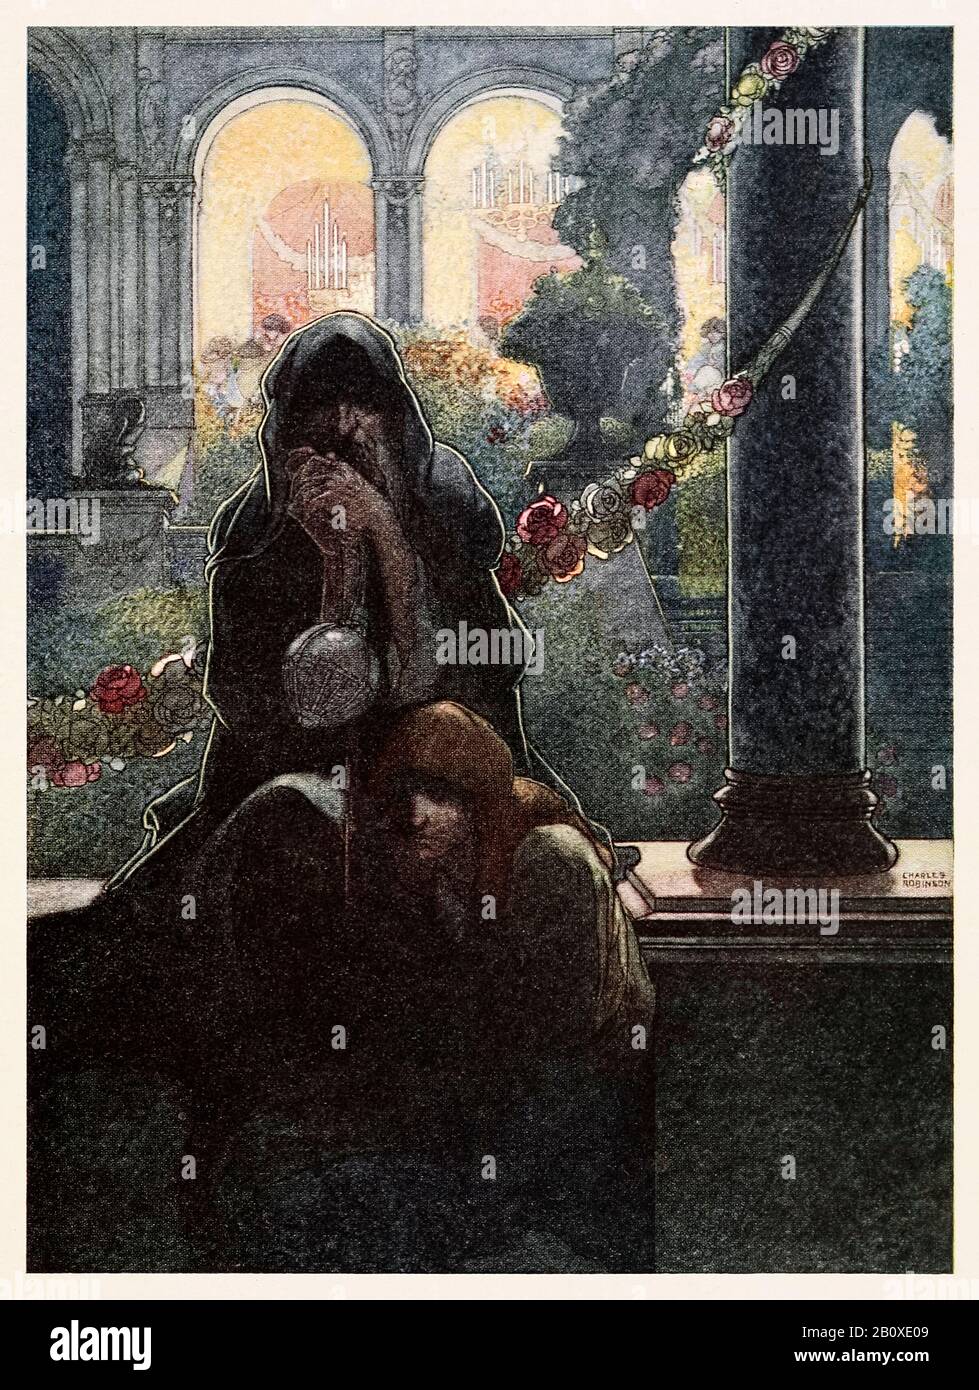 "I ricchi che si rallegrano nelle loro belle case mentre i mendicanti erano seduti alla porta" dall'Happy Prince e Altri Tales di Oscar Wilde (1854-1900) illustrato da Charles Robinson (1870-1937). Vedere di seguito ulteriori informazioni. Foto Stock